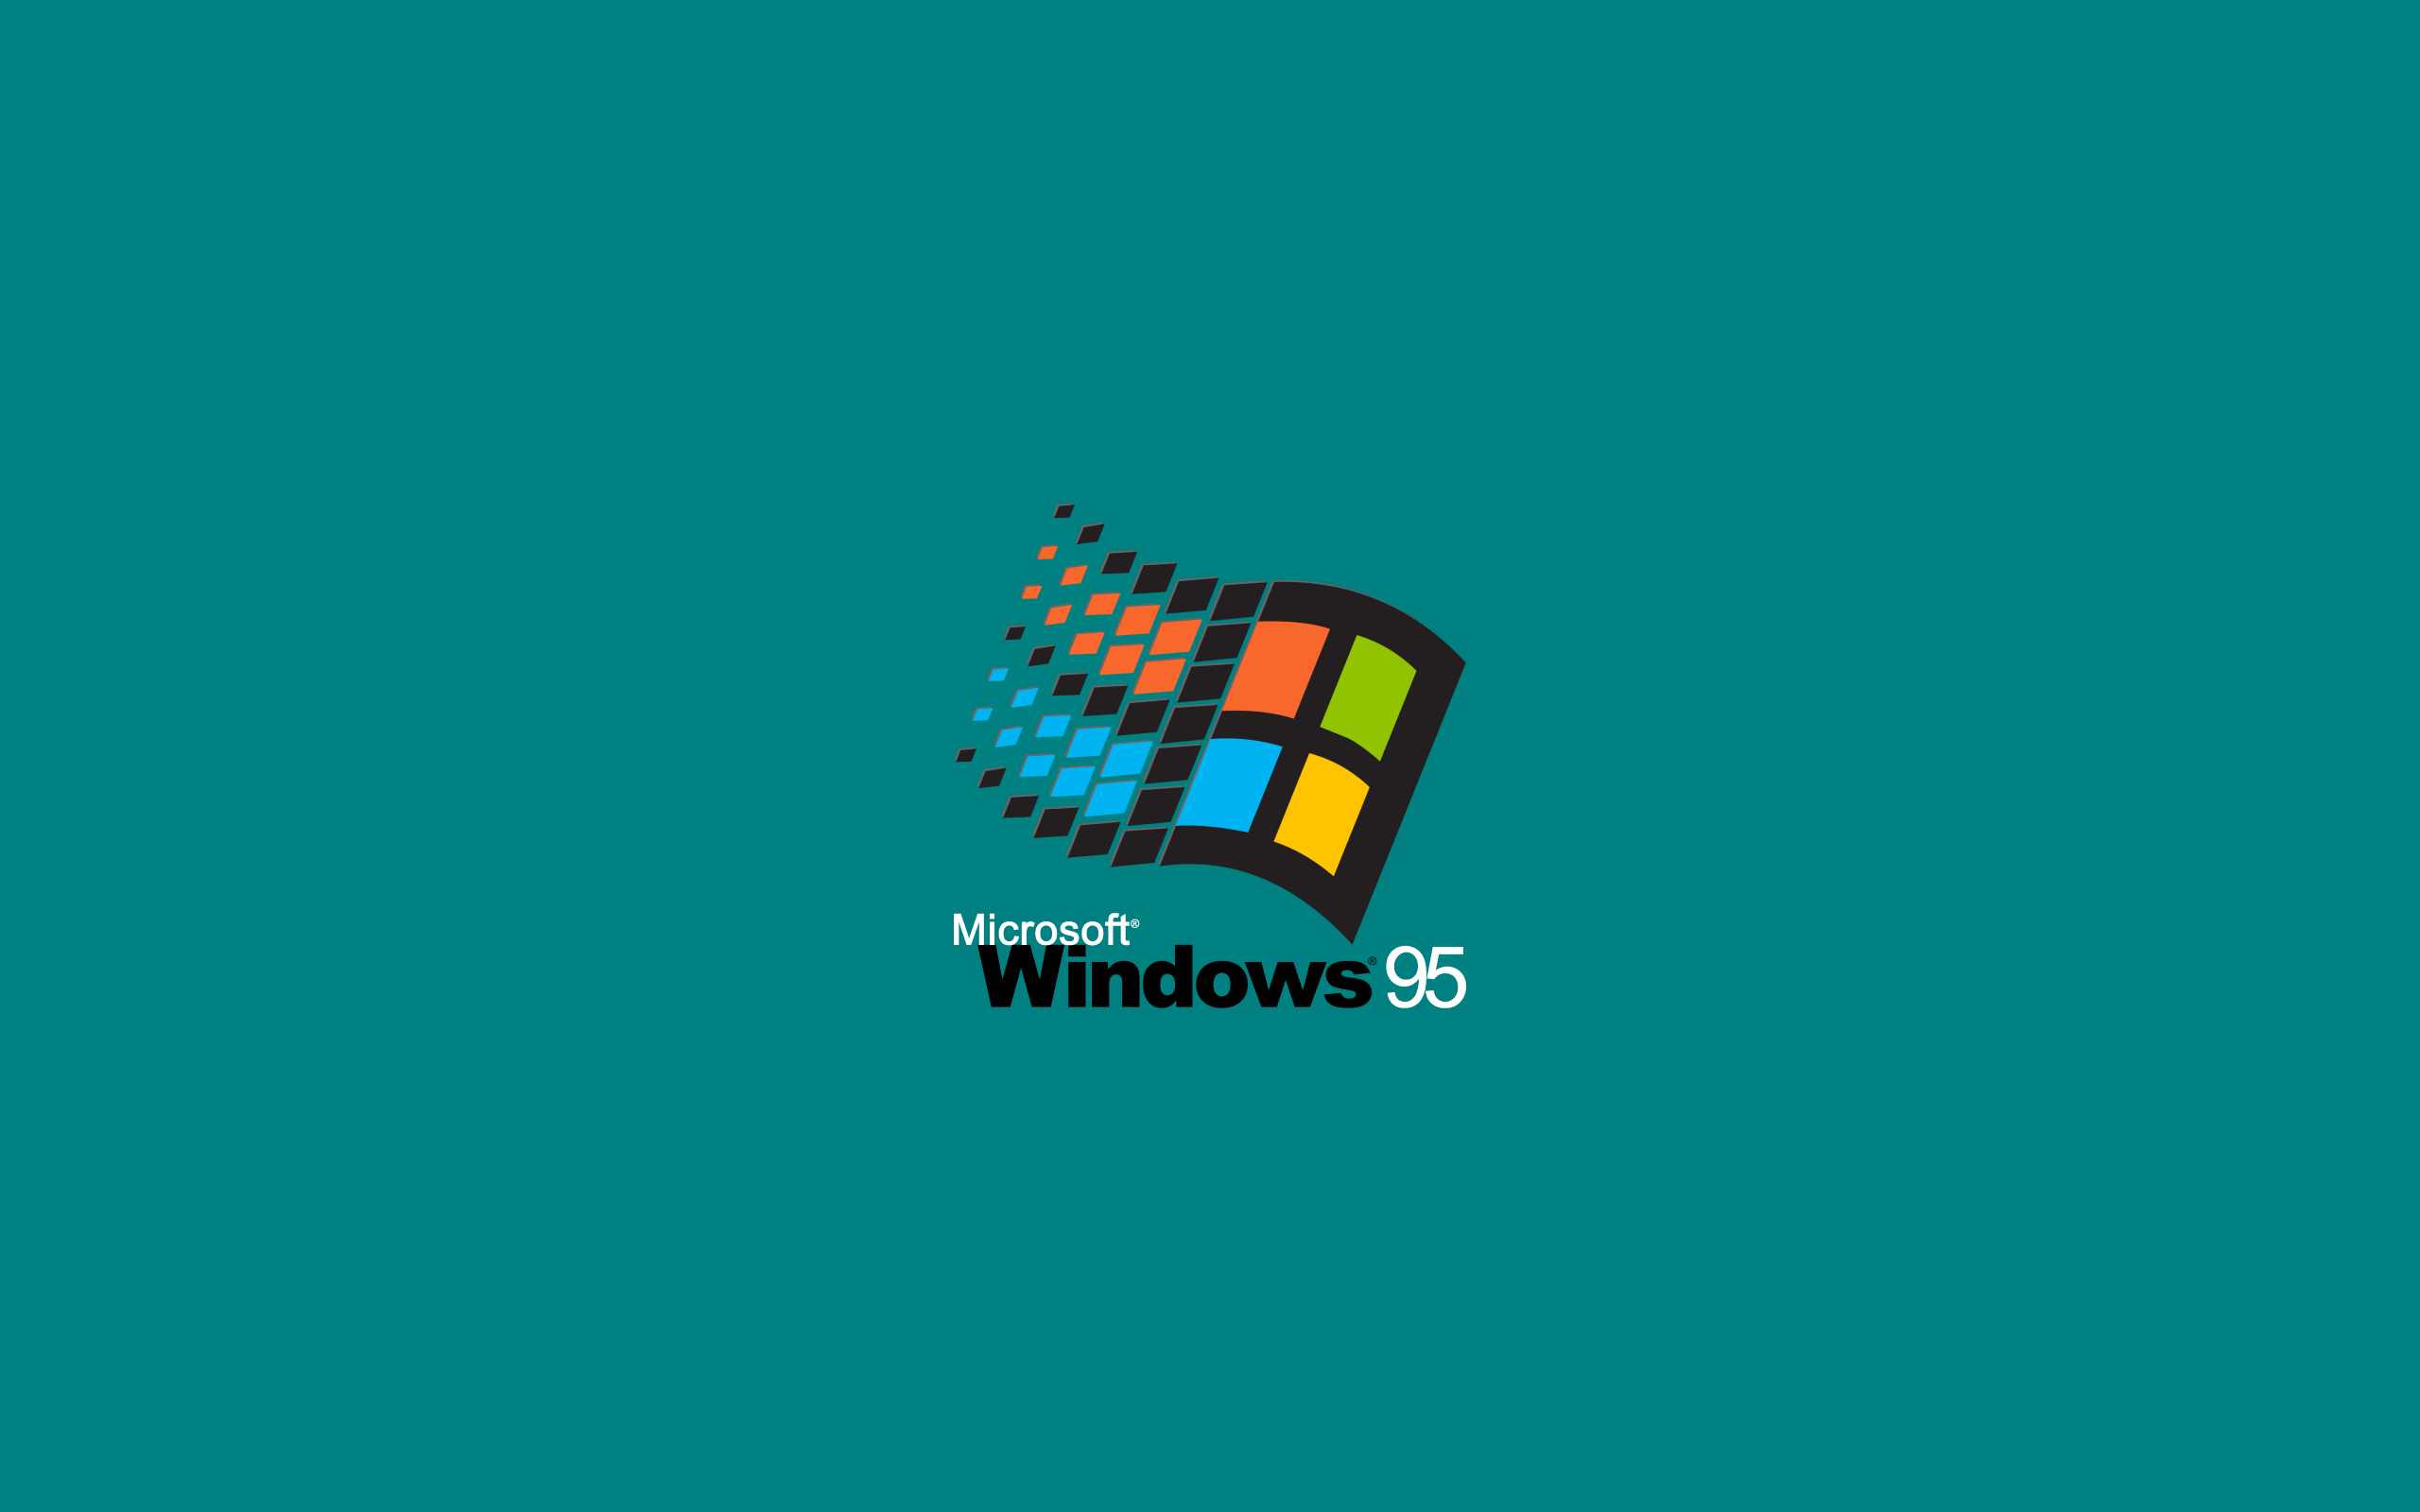 Hình nền Windows 95 mang lại cho bạn cảm giác hoài niệm với dòng sản phẩm Windows cũ. Bạn sẽ có một chút thời gian torchiếu đoản phim, với bộ sưu tập hình nền huyền thoại của Windows. Hơn nữa, độ phân giải cao sẽ khiến cho hình nền của Windows 95 trông tốt hơn bao giờ hết.